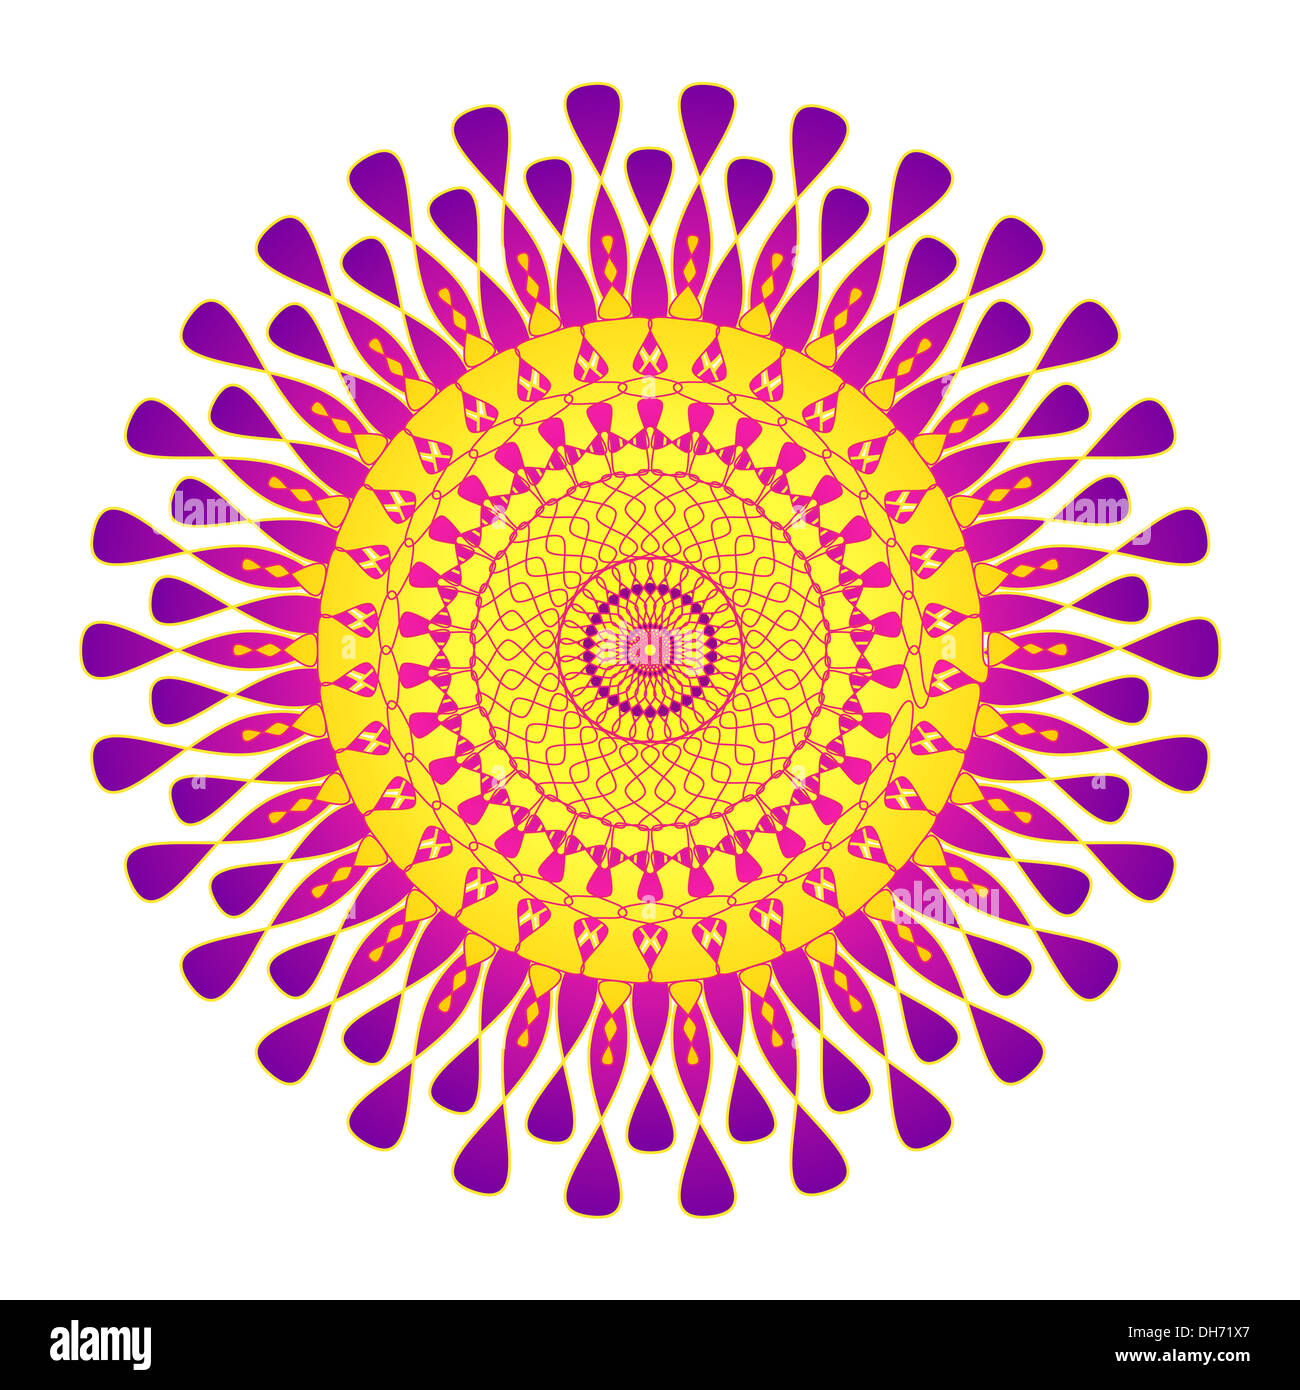 Colorful artistic mandala pattern Stock Photo